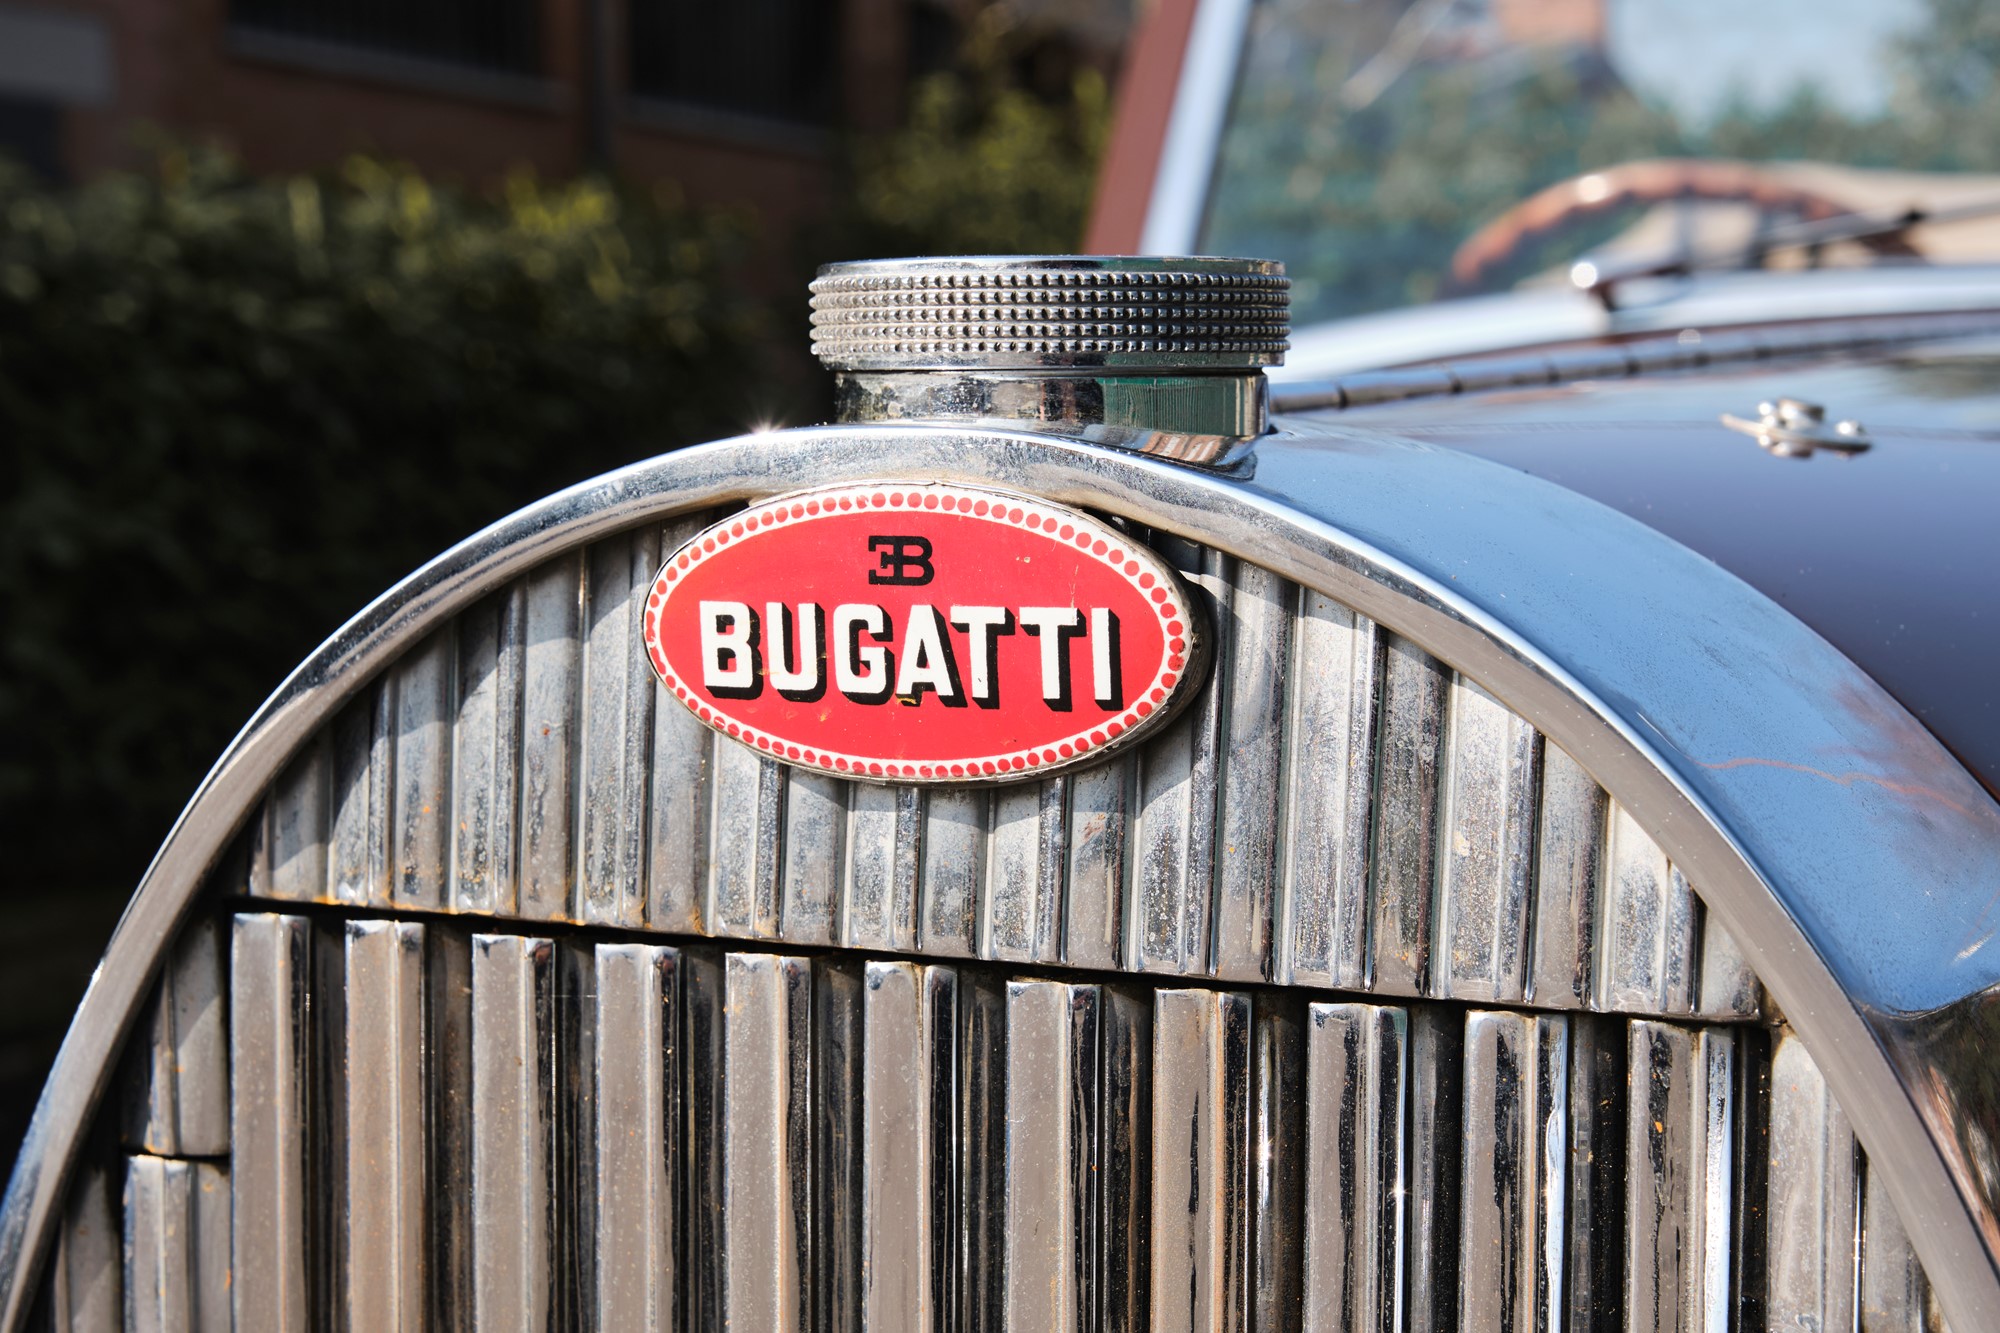 1936 Bugatti 57 cabriolet (Graber) - Image 11 of 13